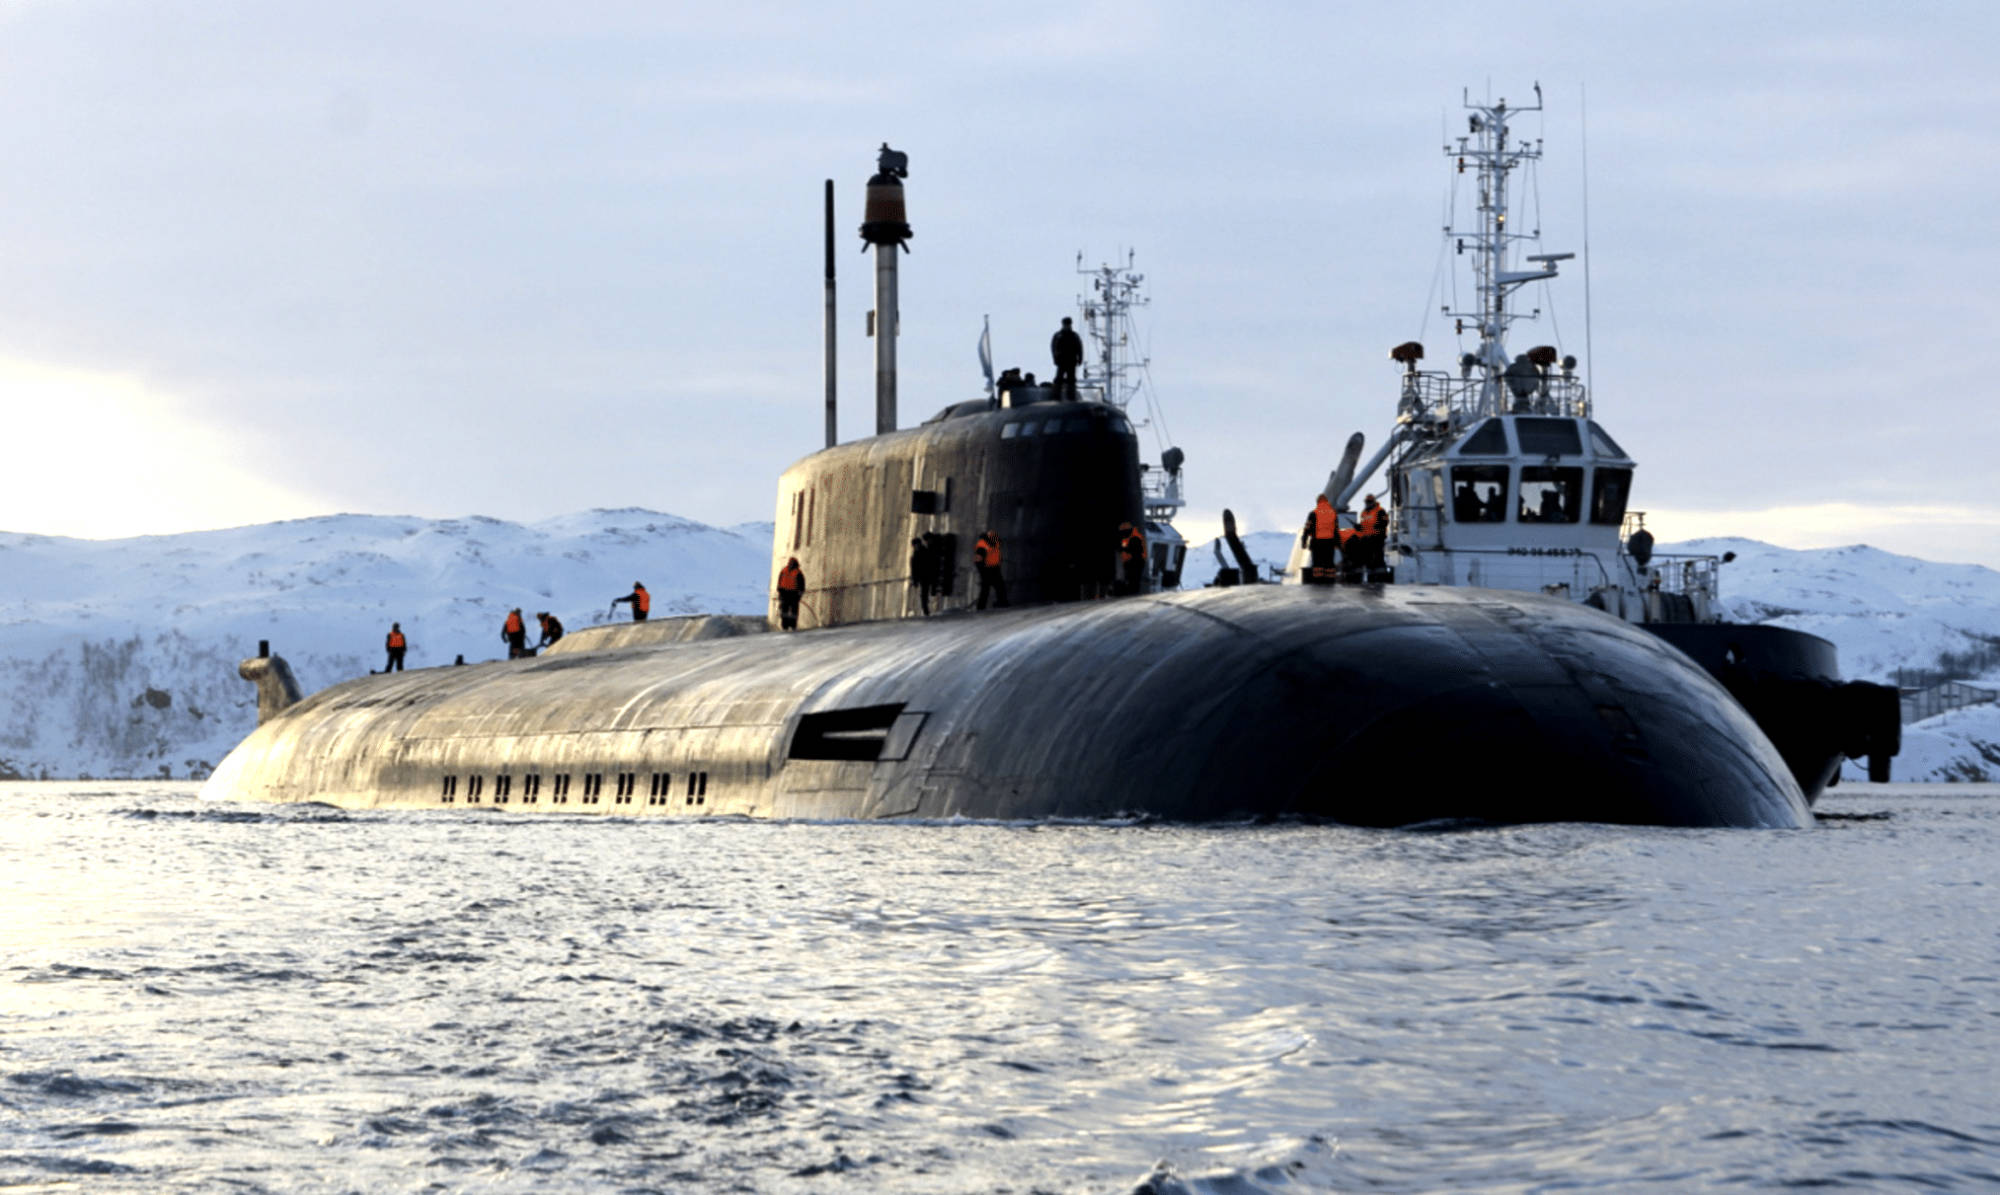 根据公告,这艘俄罗斯巨型核潜艇携带了24枚p-700超音速反舰导弹,足以